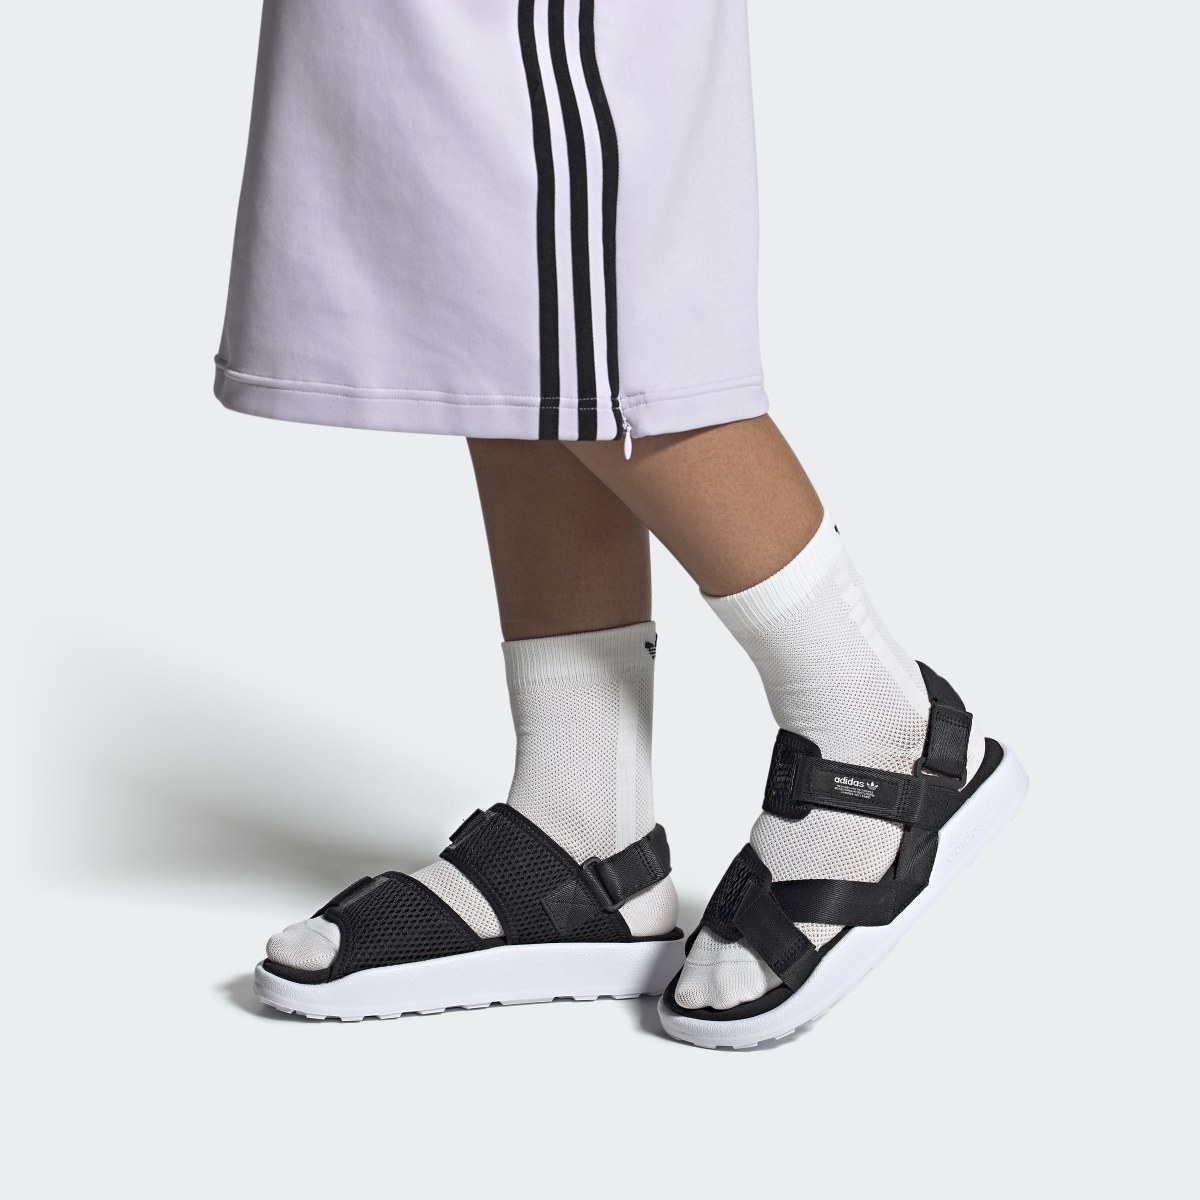 Adidas Adilette Adventure Sandals. 5